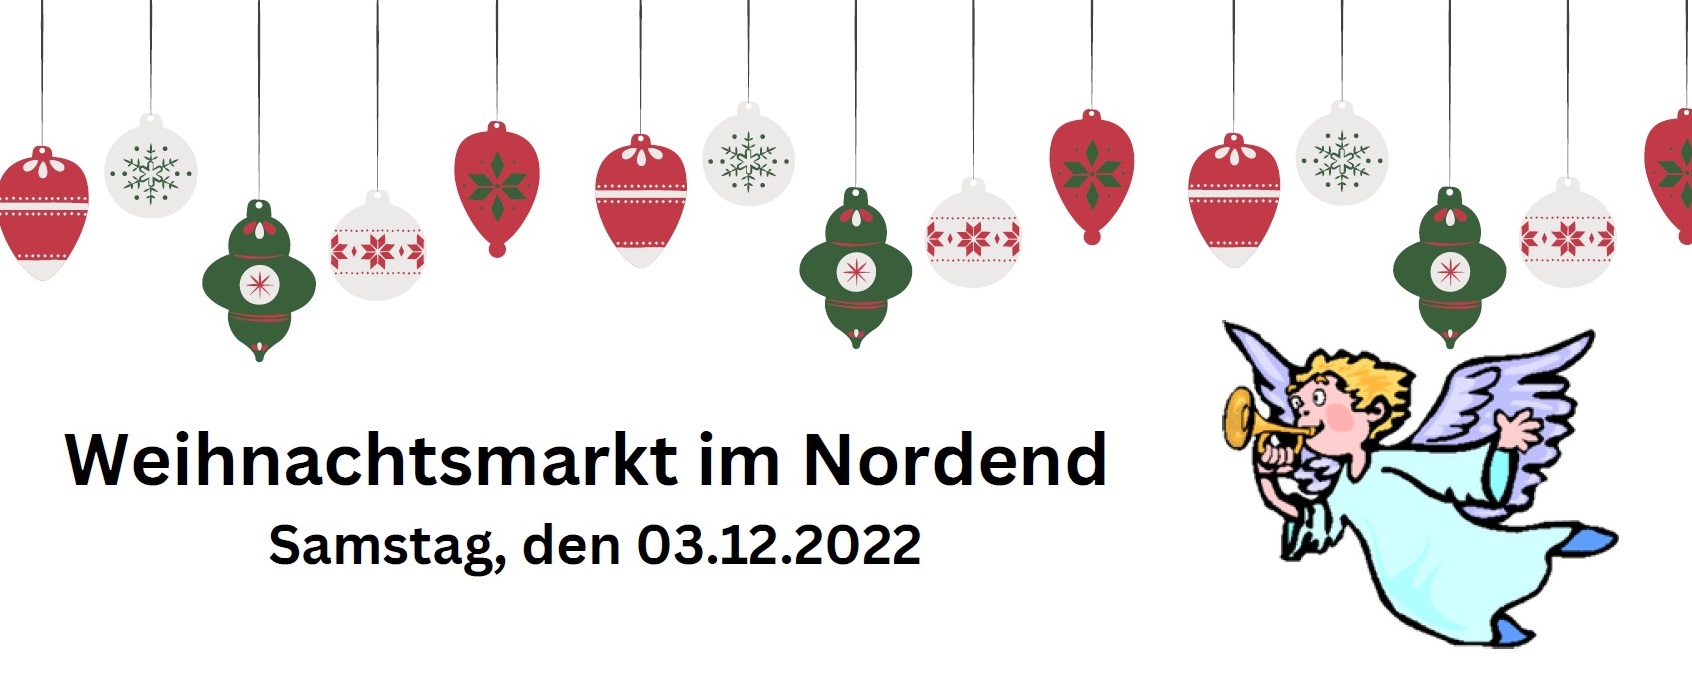 Weihnachtsmarkt 2022 1 (c) red